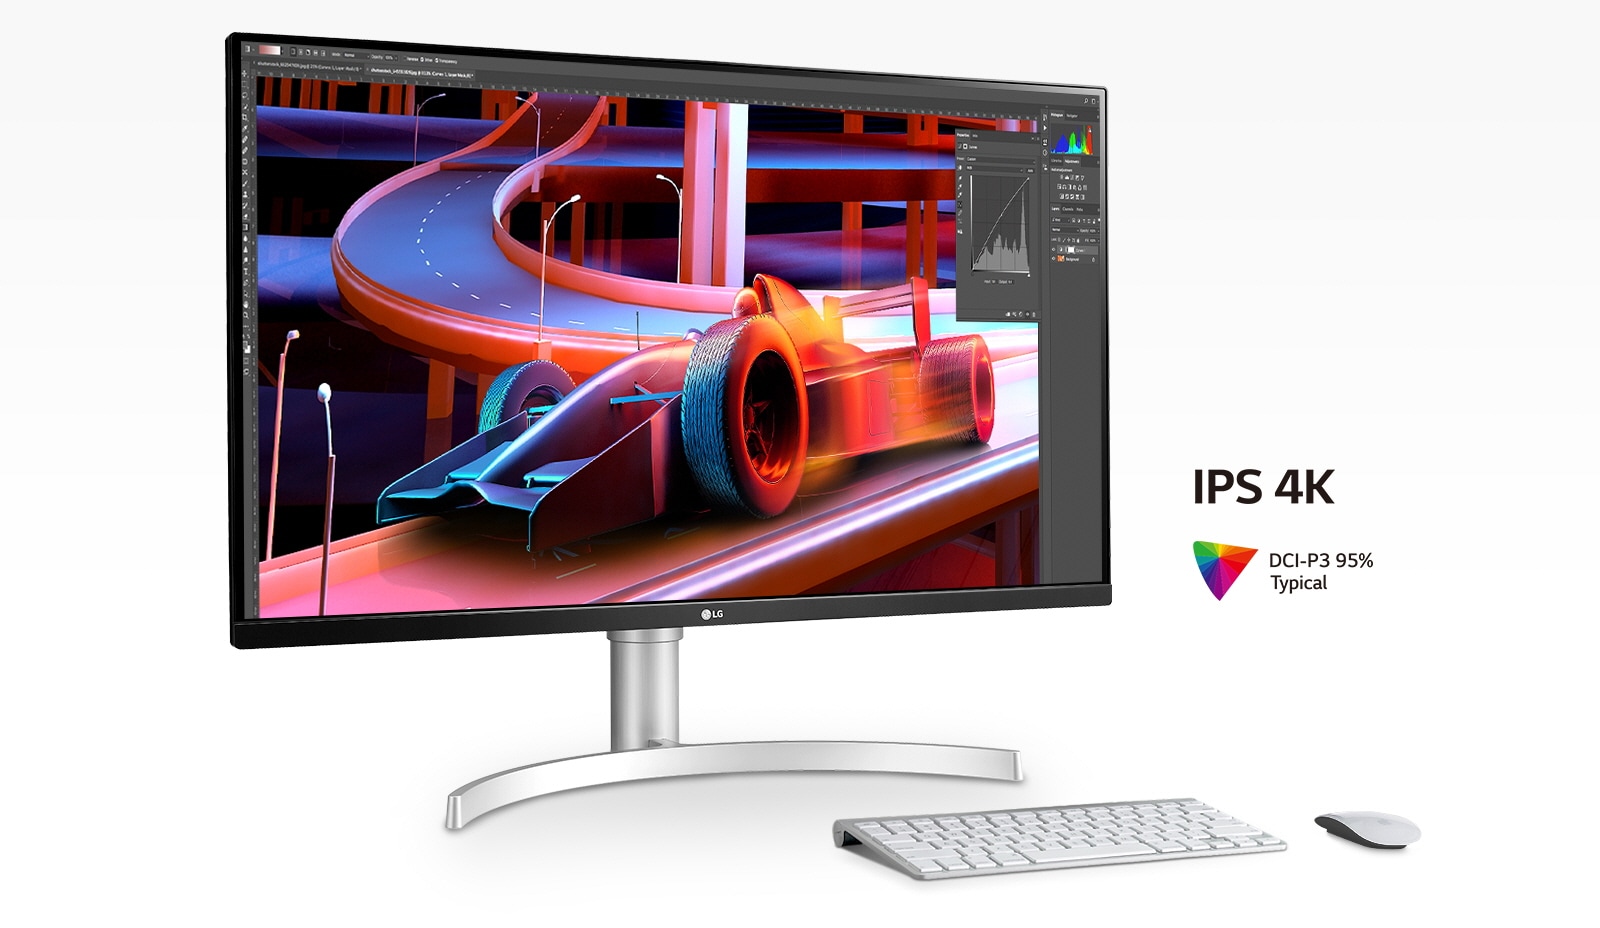 IPS 4K, and DCI-P3 95% (Typ.) для соответствующей ясности, точности и цветового выражения